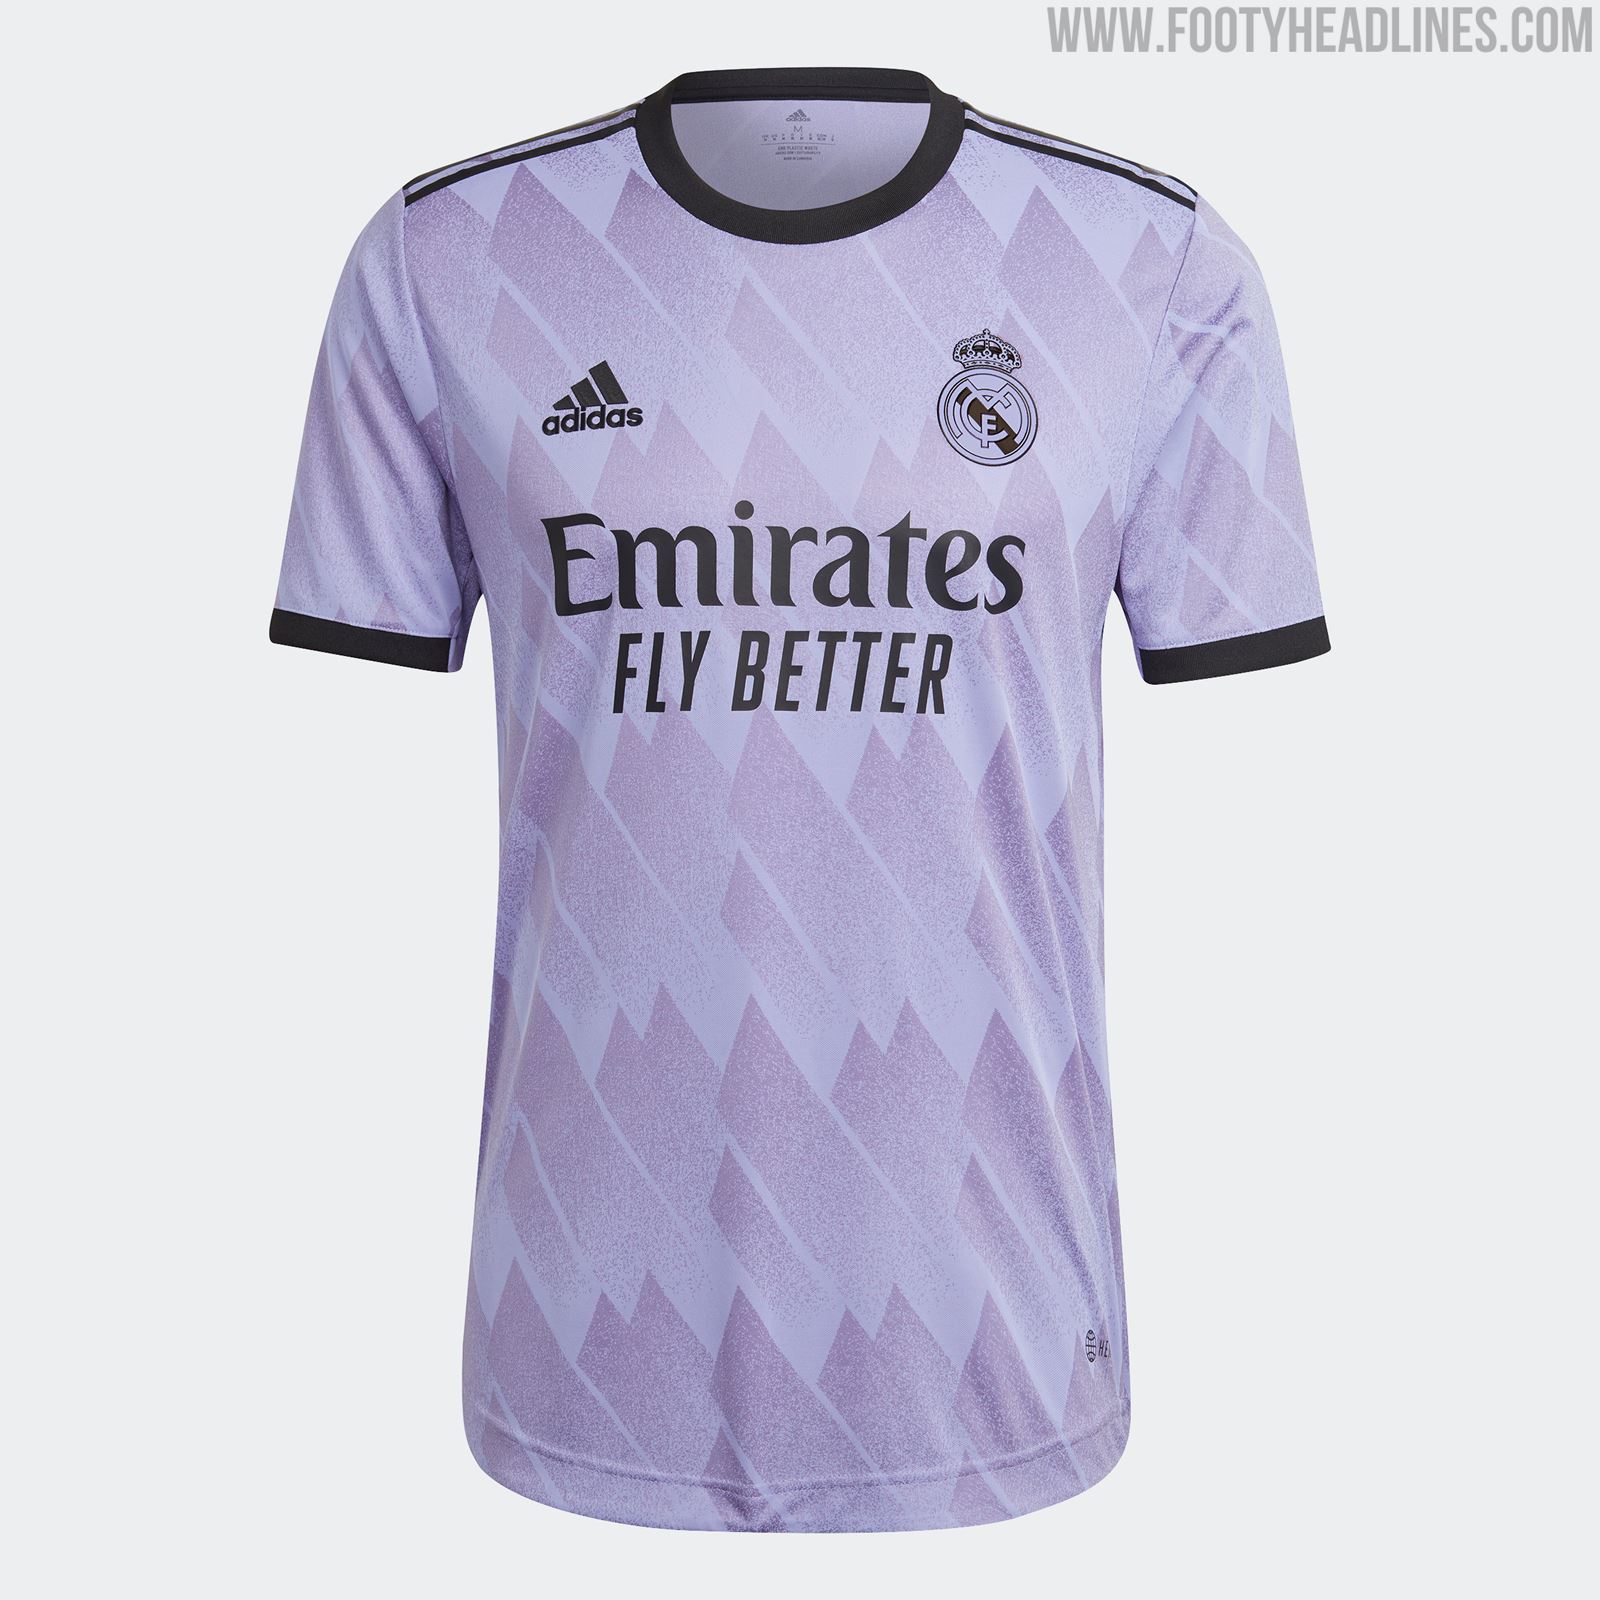 Real Madrid 22-23 Away Kit Released - Footy Headlines